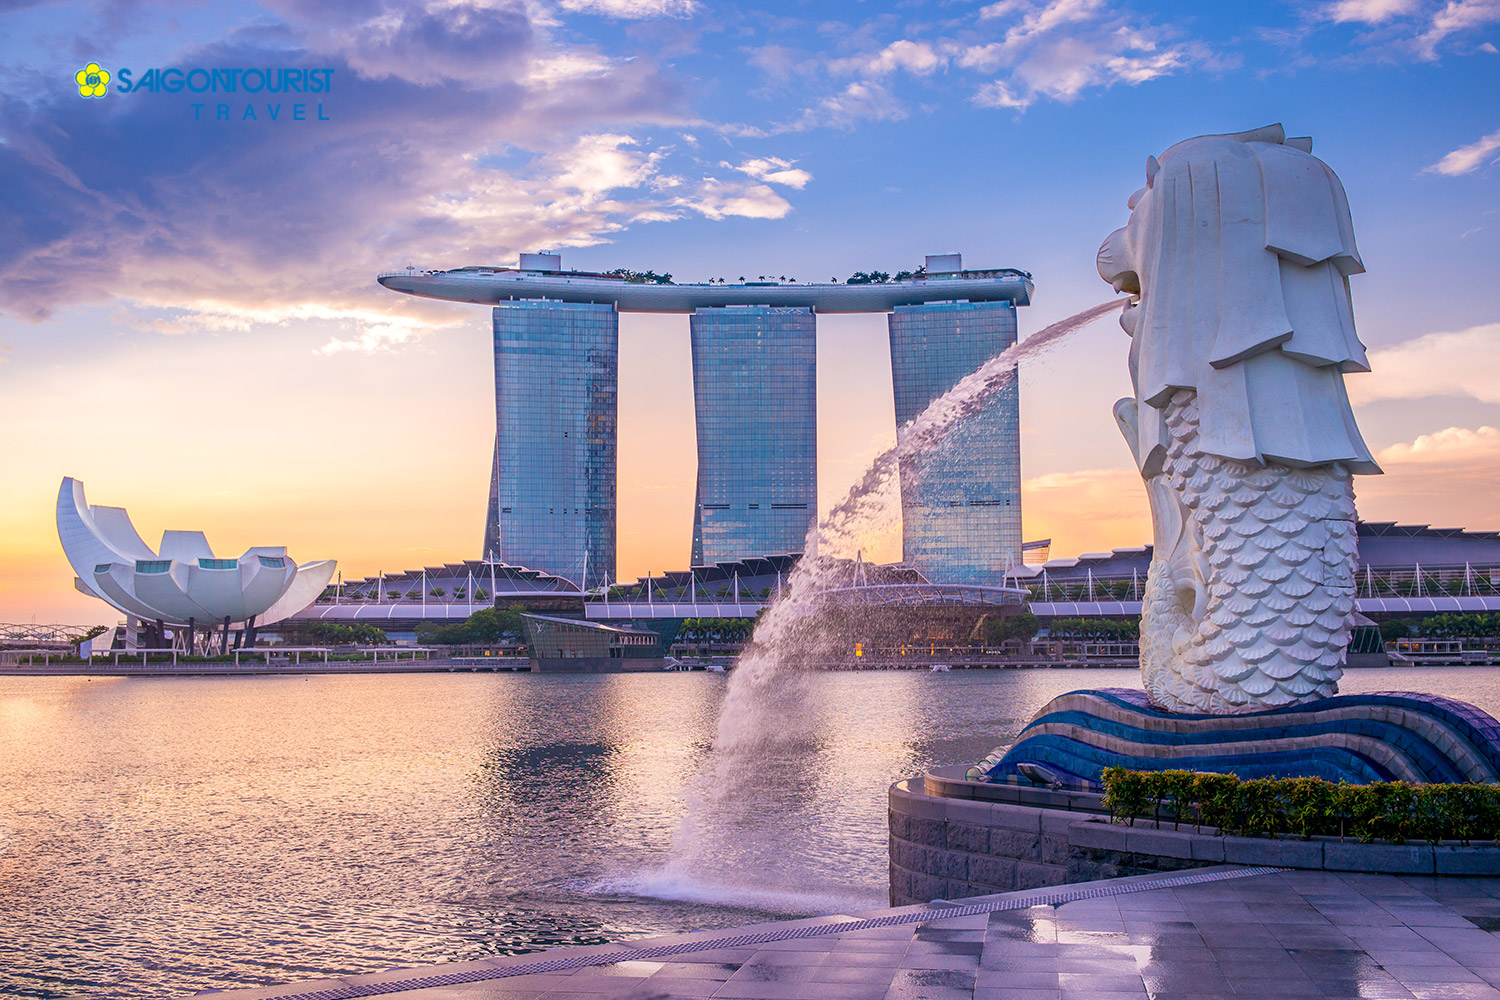 Du lịch Singapore [GARDEN BY THE BAY – ĐẢO SENTOSA – 1 NGÀY TỰ DO]